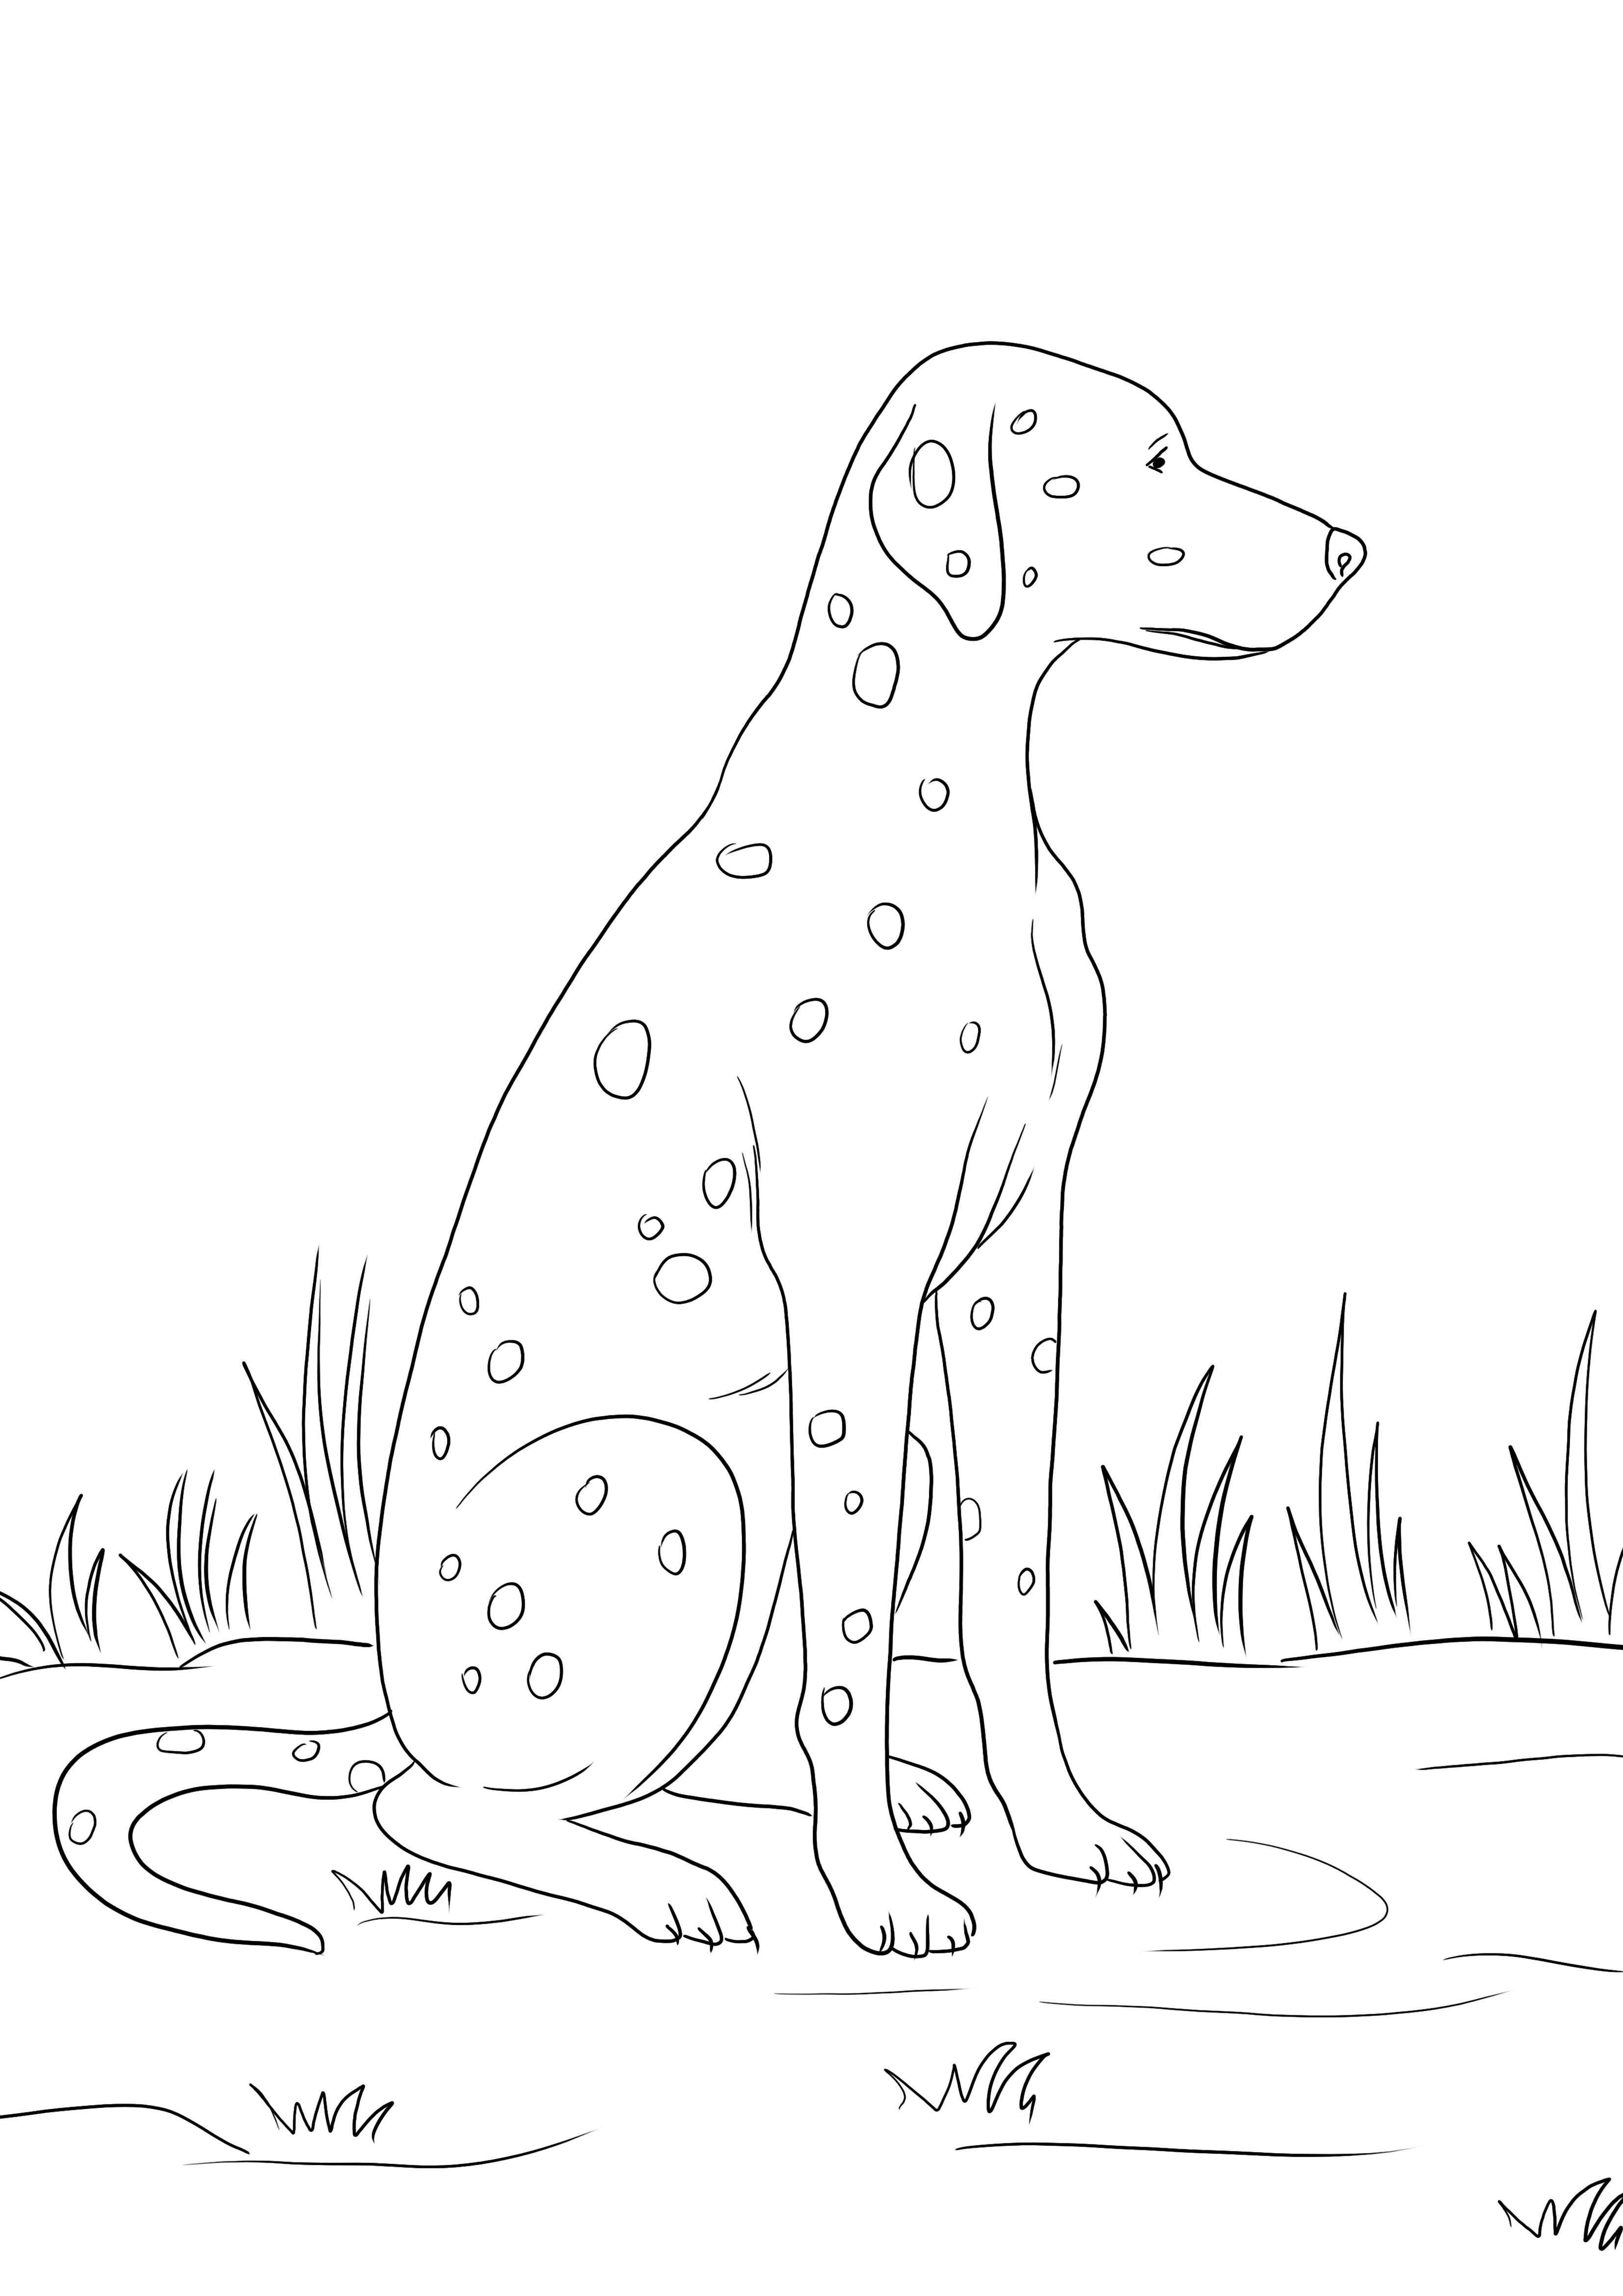 子供向けの簡単な塗り絵用のダルメシアン犬の無料印刷可能